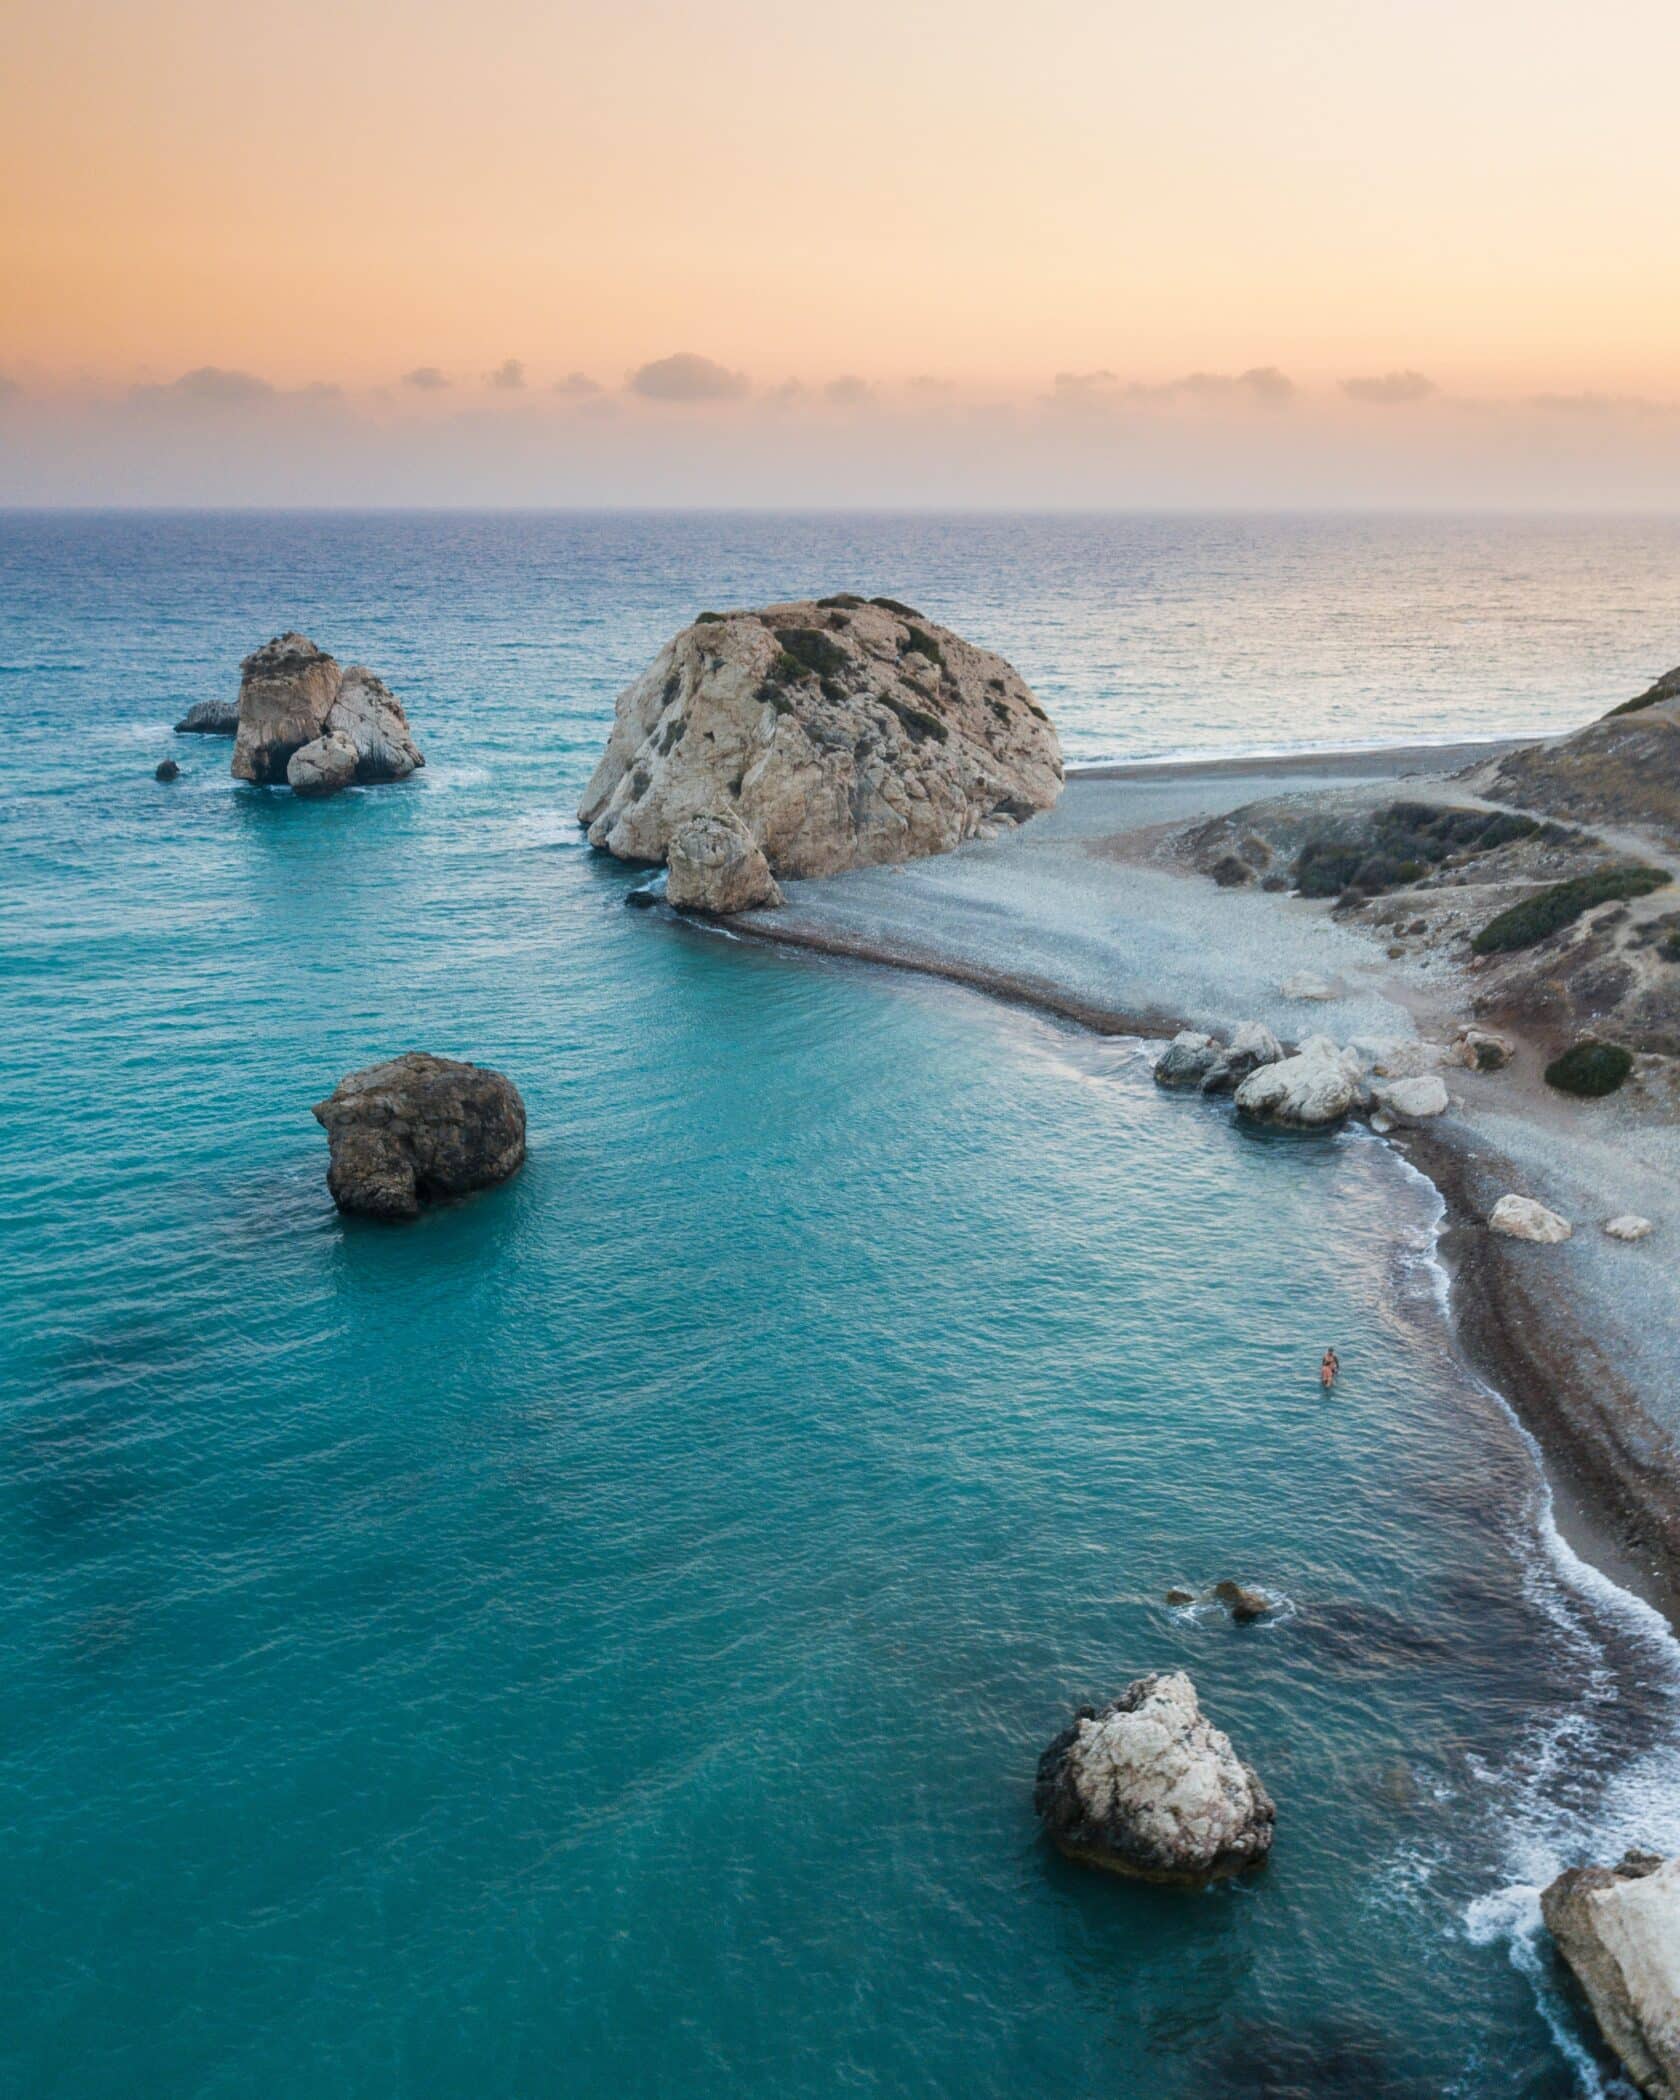 Din rejse rtil Cypern og den skønne natur